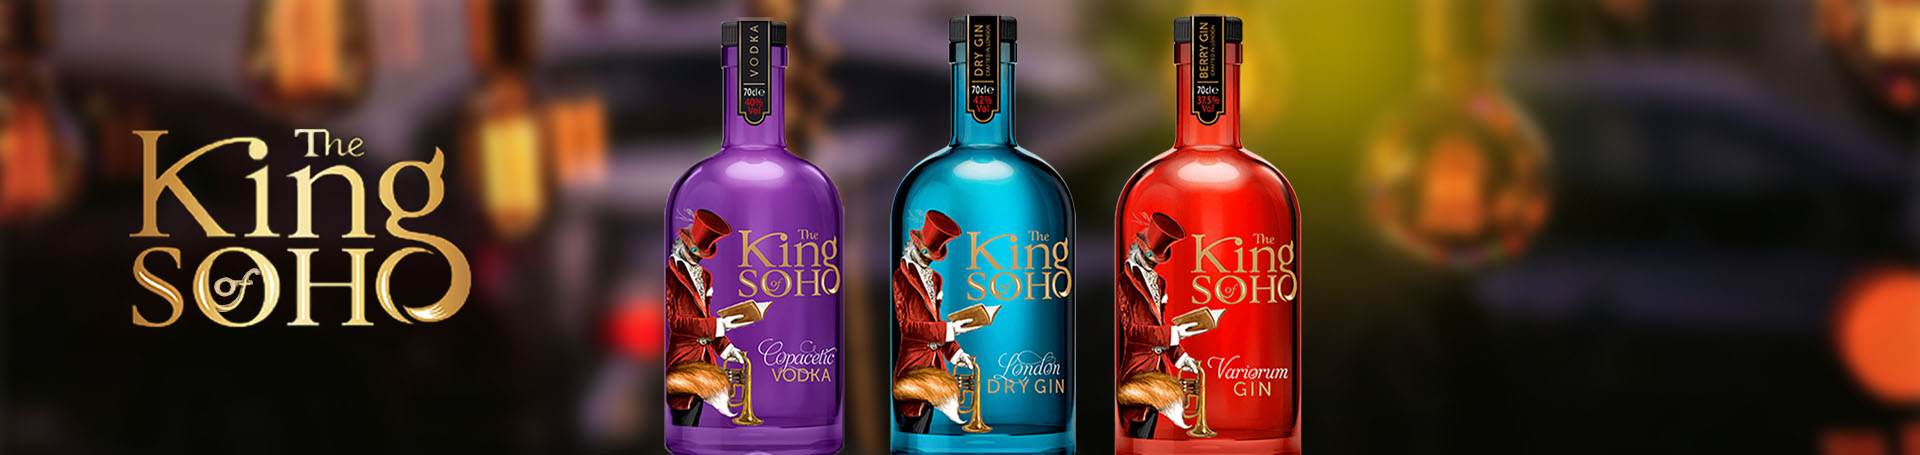 King of Soho banner with bottles